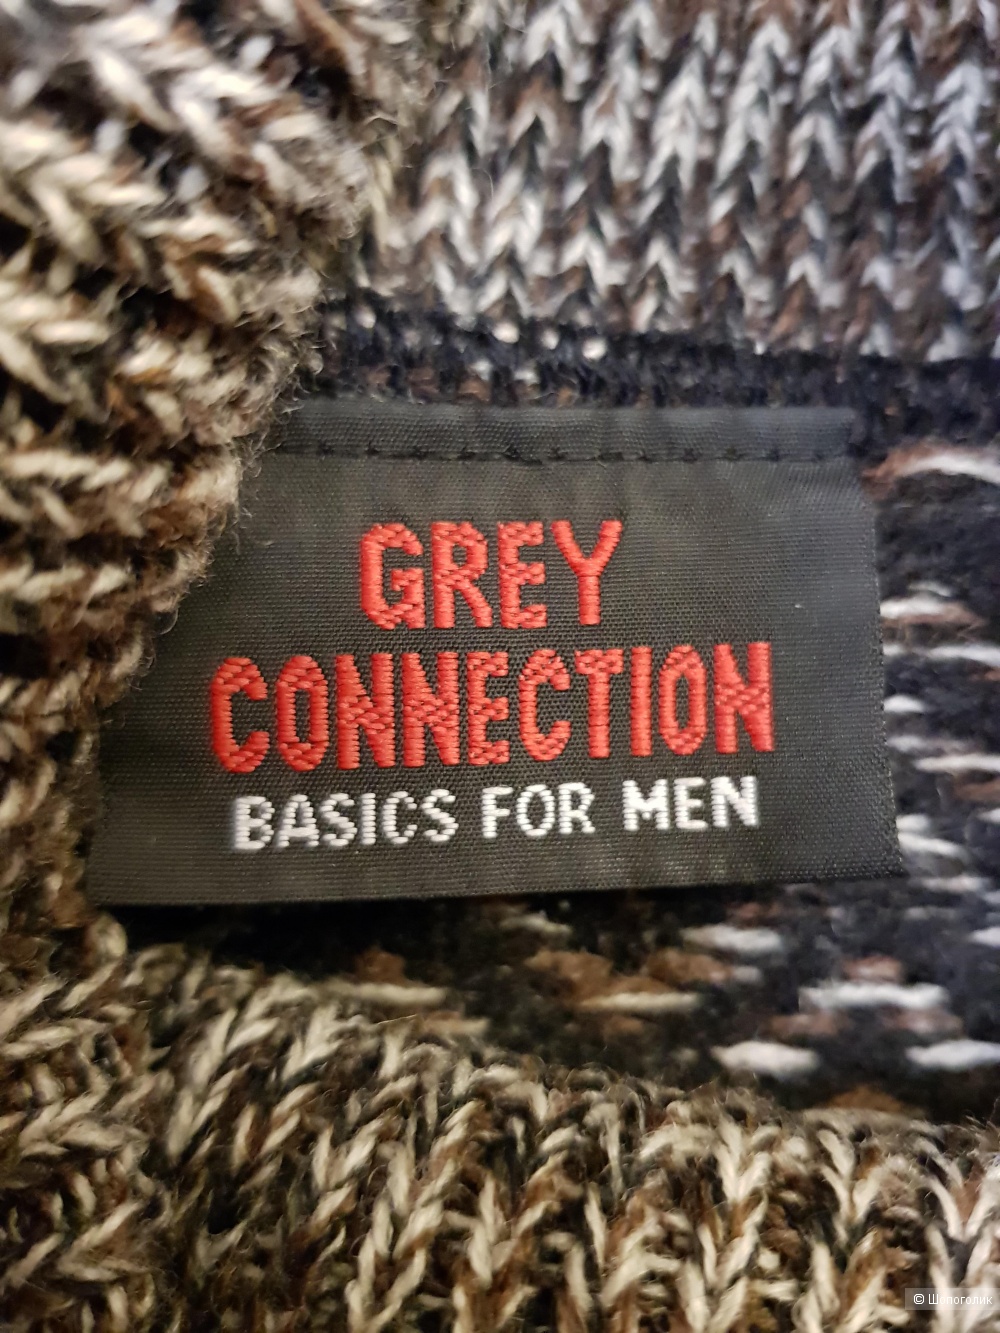 Свитер Grey Connection, 46-48 размер, унисекс